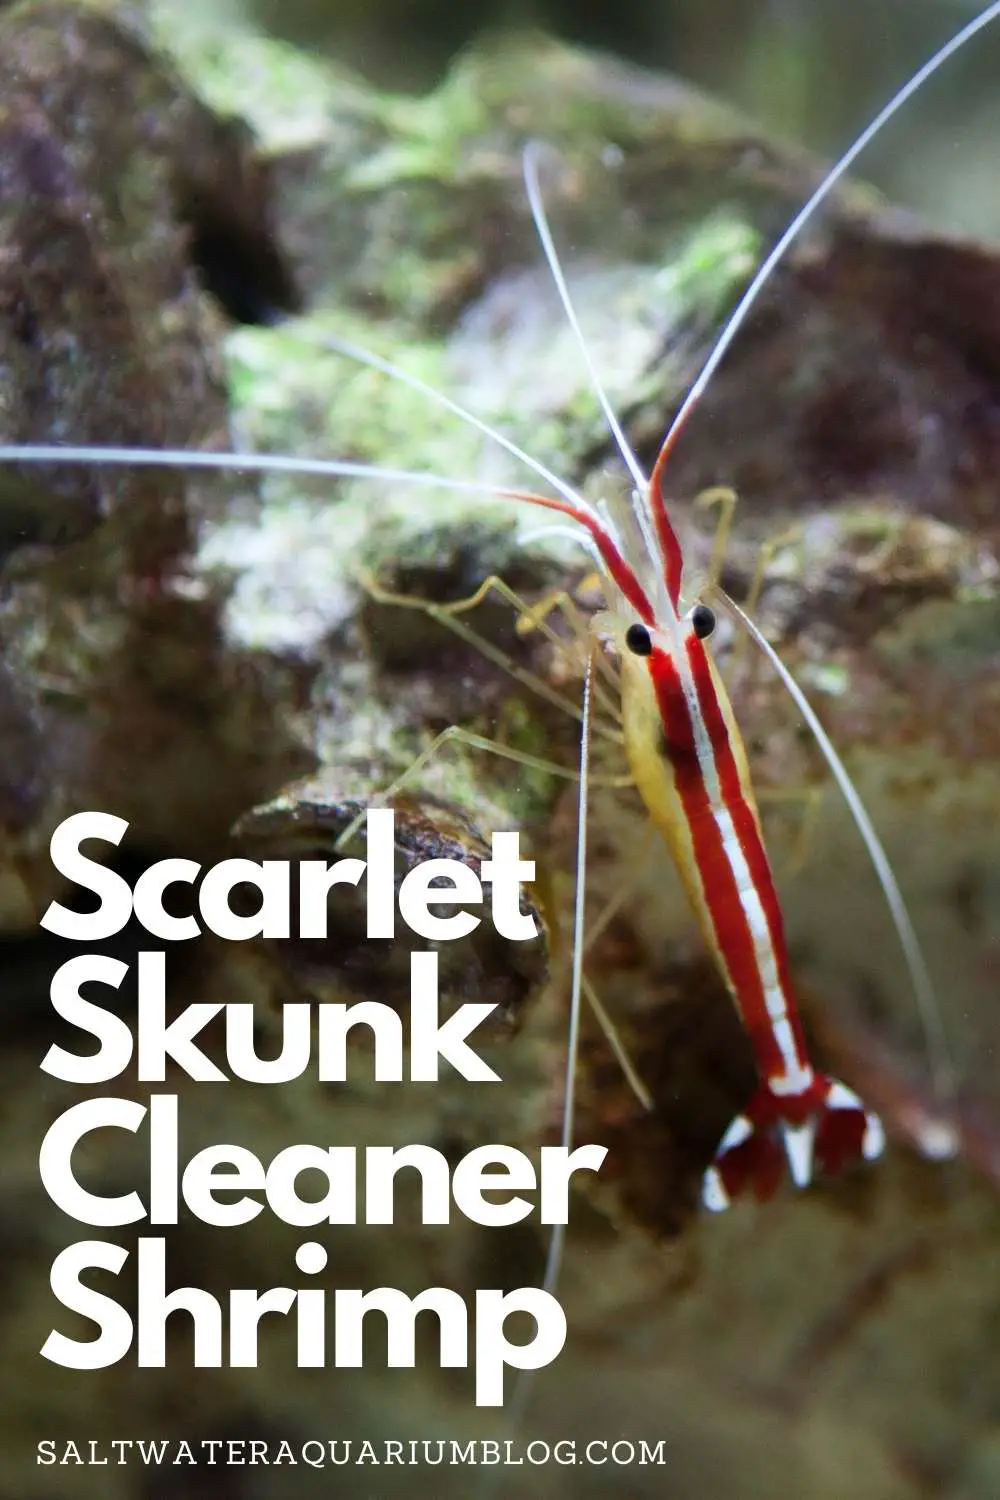 scarlet skunk cleaner shrimp large image for pinterest